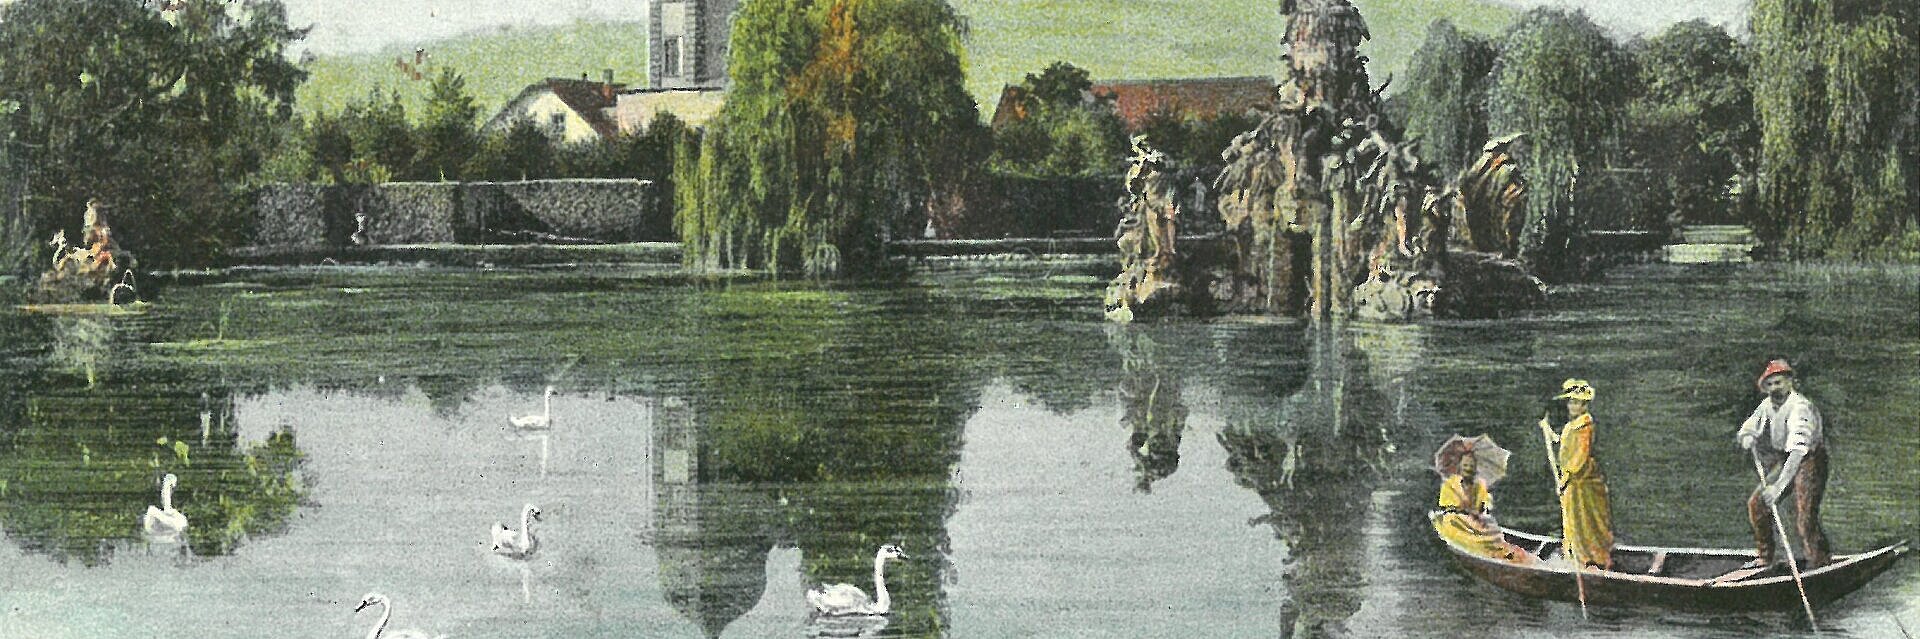 Historische Ansichtskarte des Rokokogartens. Großer See mit Musenberg Parnass